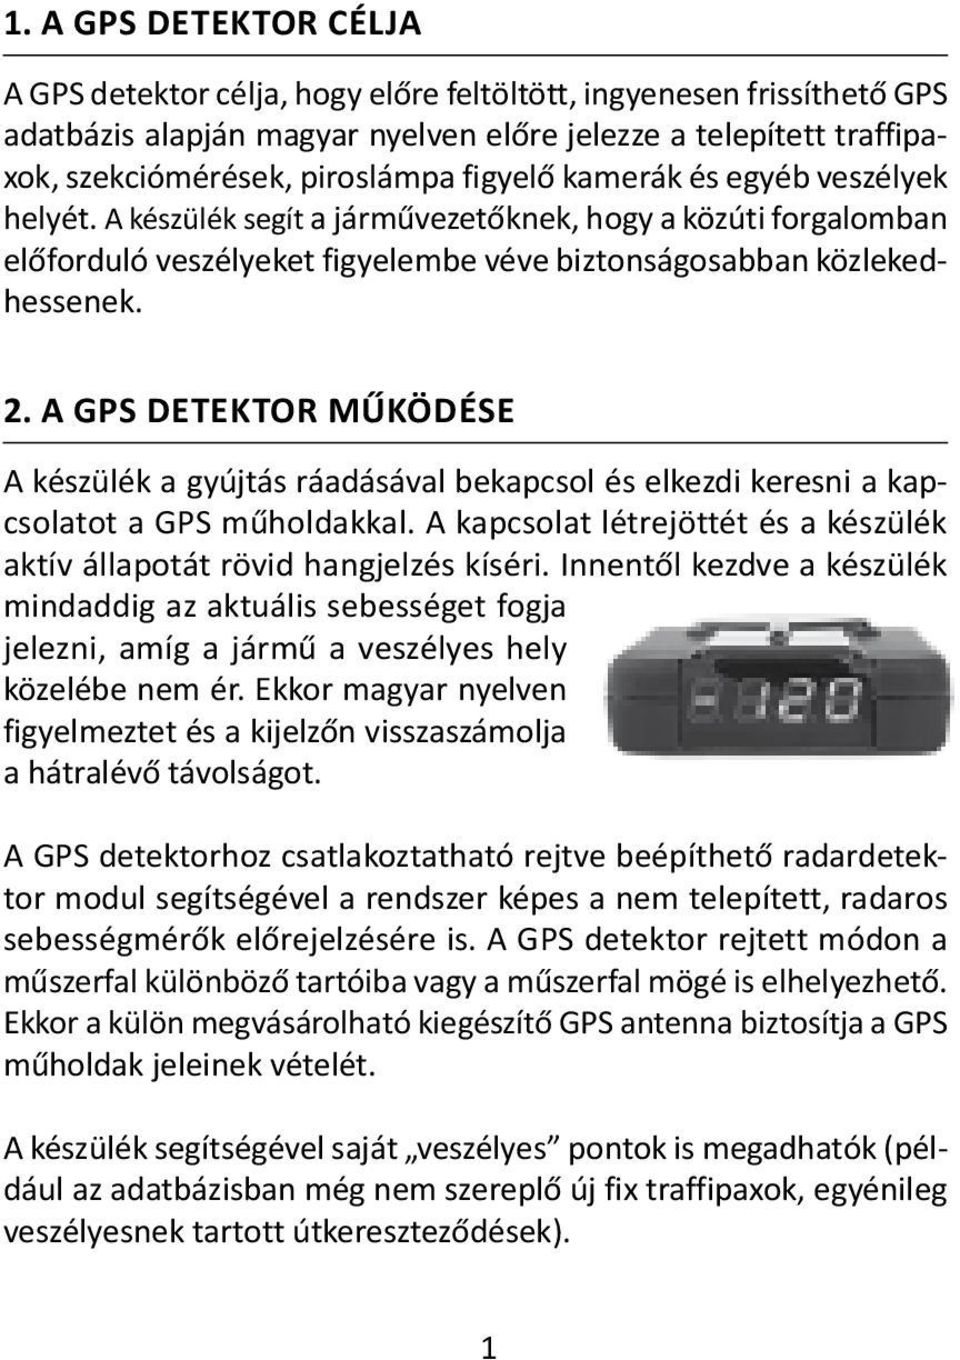 A GPS DETEKTOR MŰKÖDÉSE A készülék a gyújtás ráadásával bekapcsol és elkezdi keresni a kapcsolatot a GPS műholdakkal. A kapcsolat létrejöttét és a készülék aktív állapotát rövid hangjelzés kíséri.